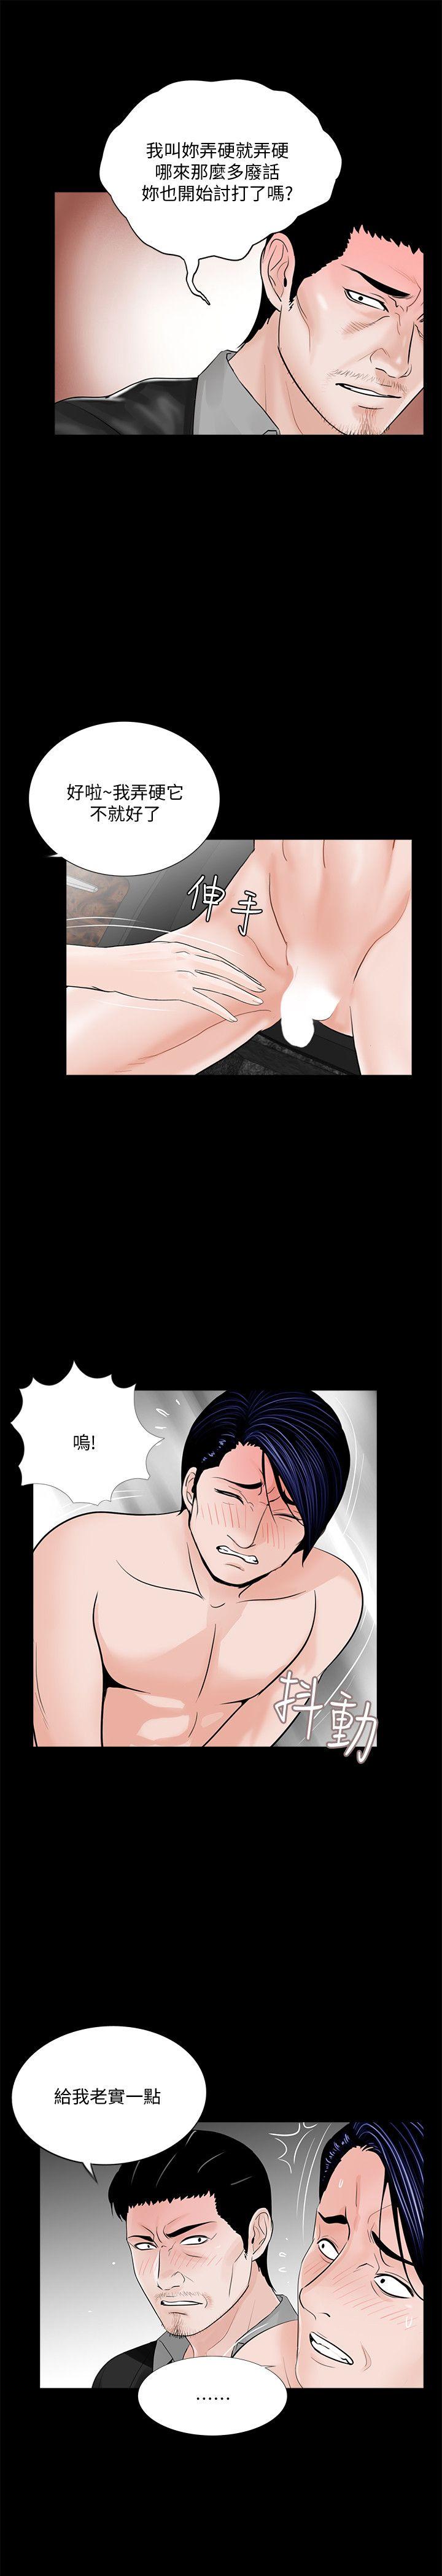 韩国污漫画 夢魘 第45话-真书的未婚夫(03) 13